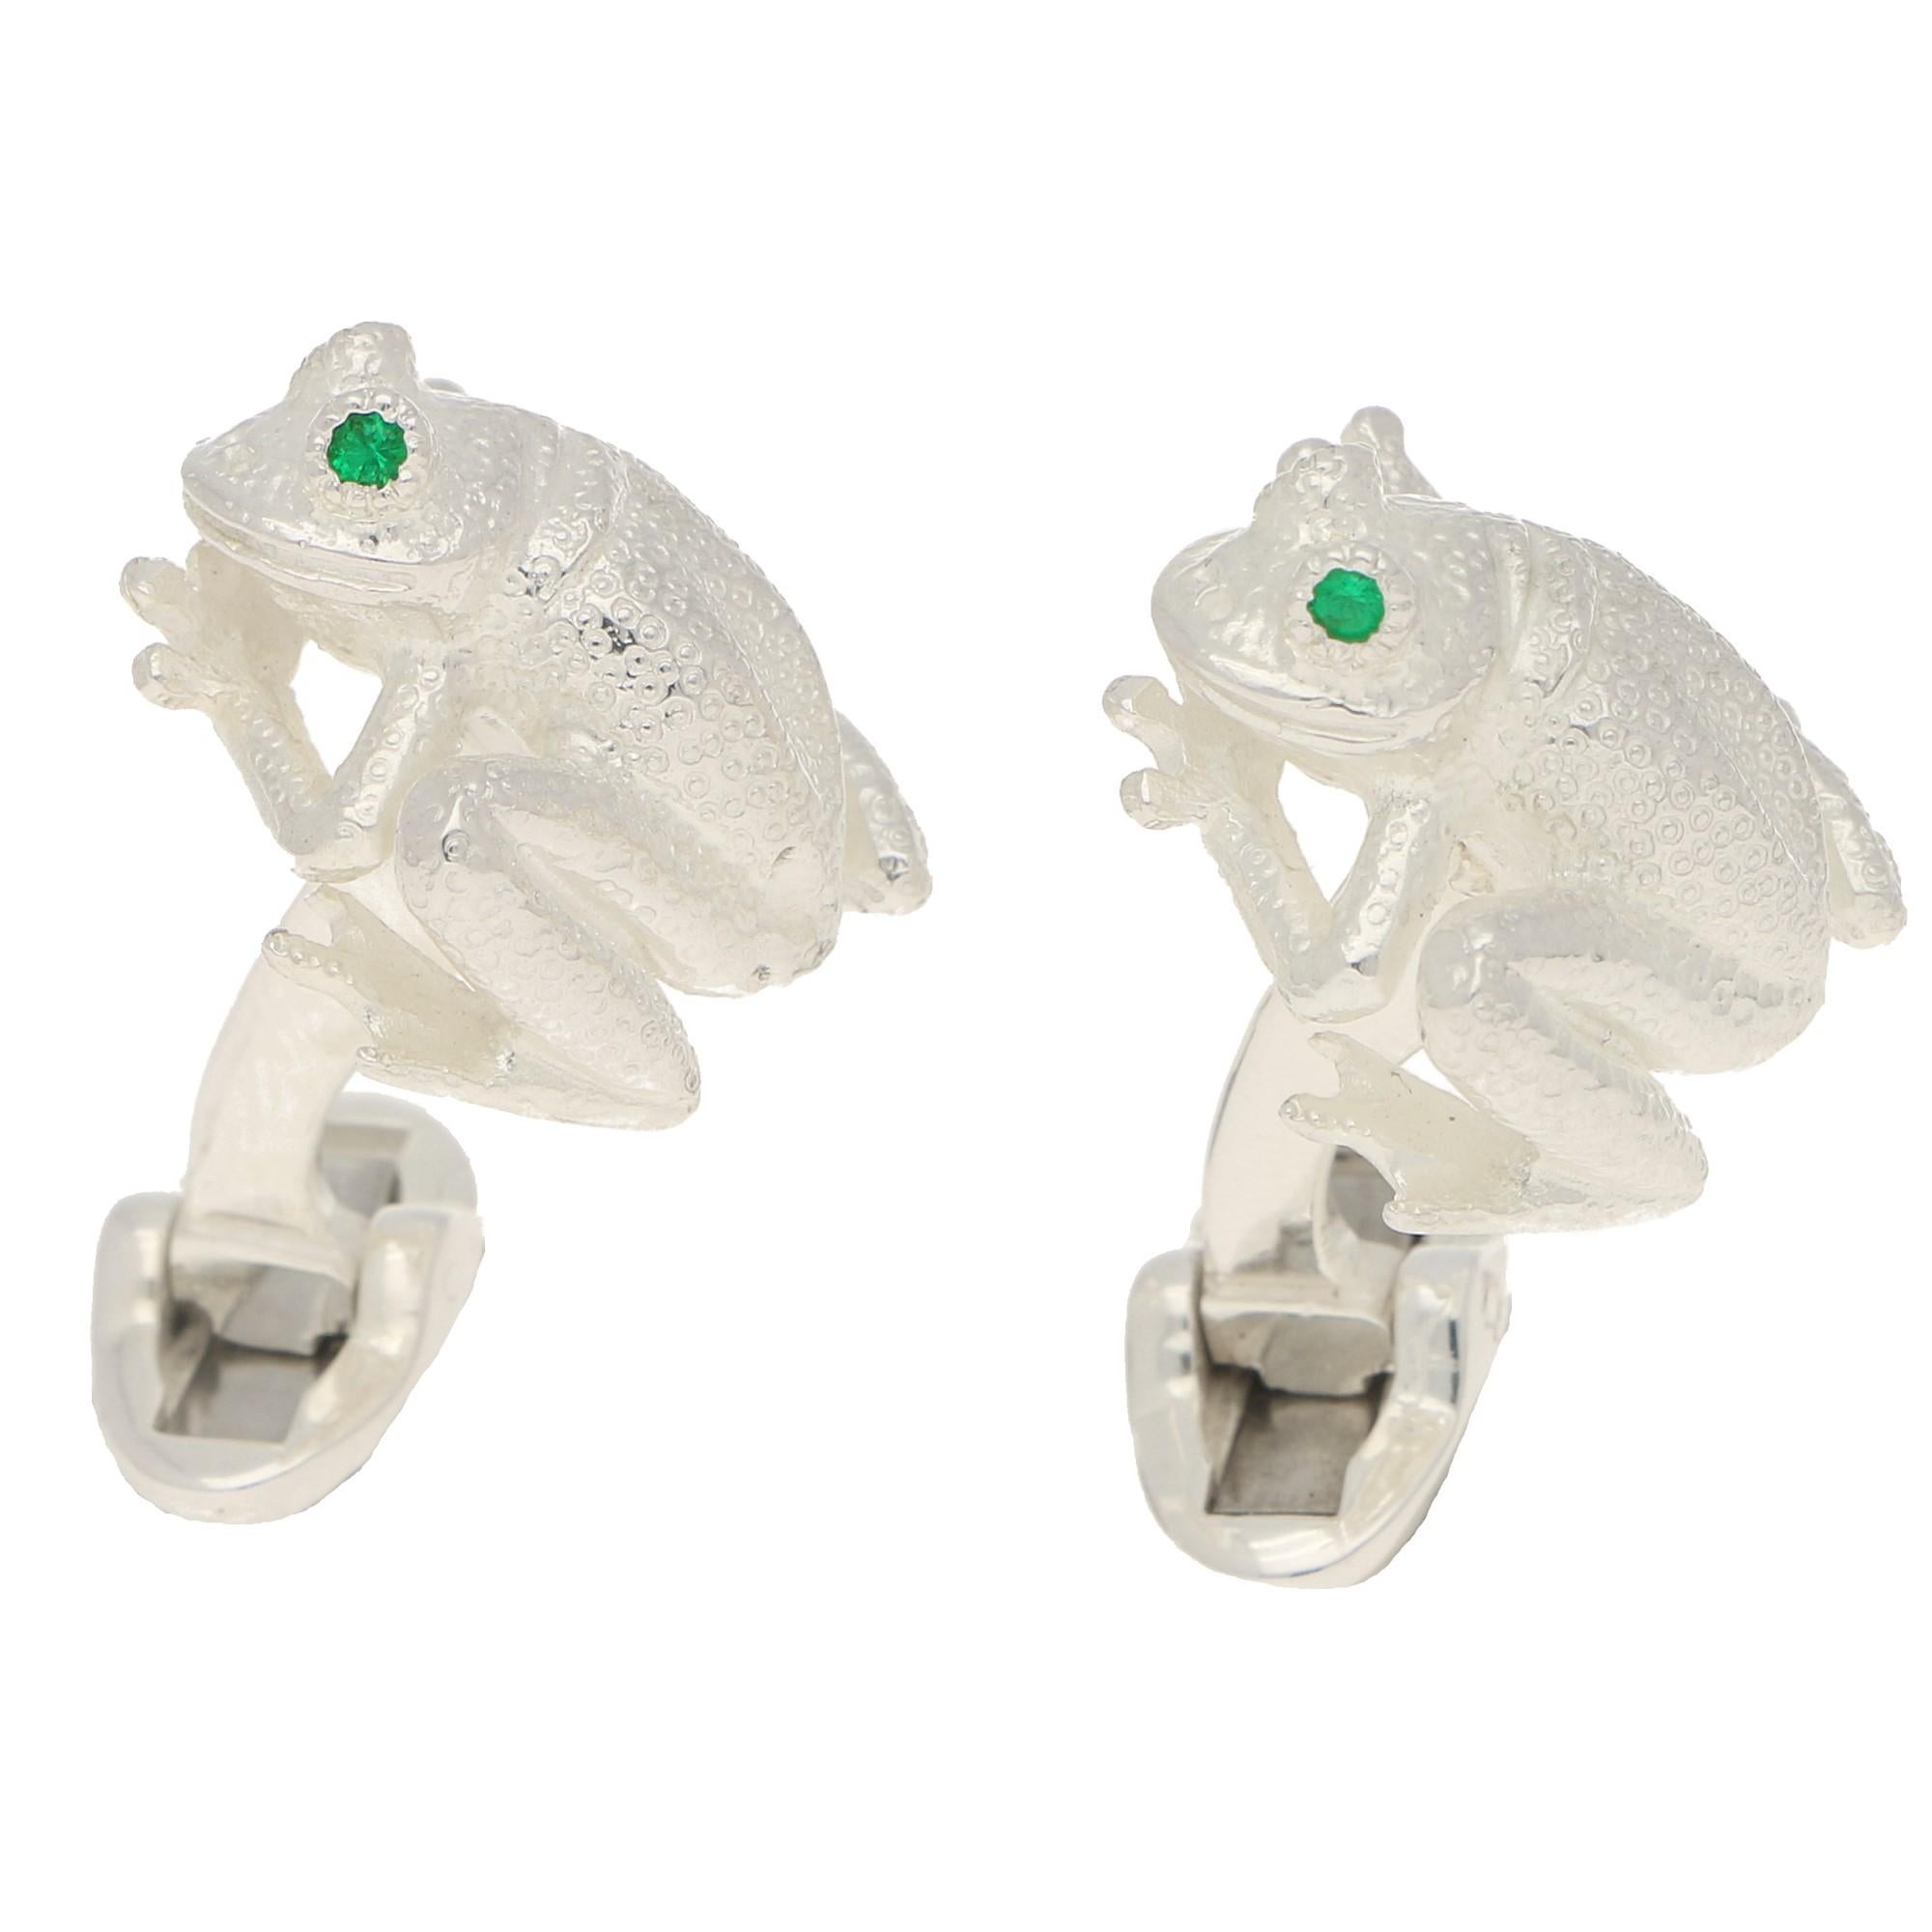 Emerald Eyed Frog Swivel-Back Cufflinks in Sterling Silver